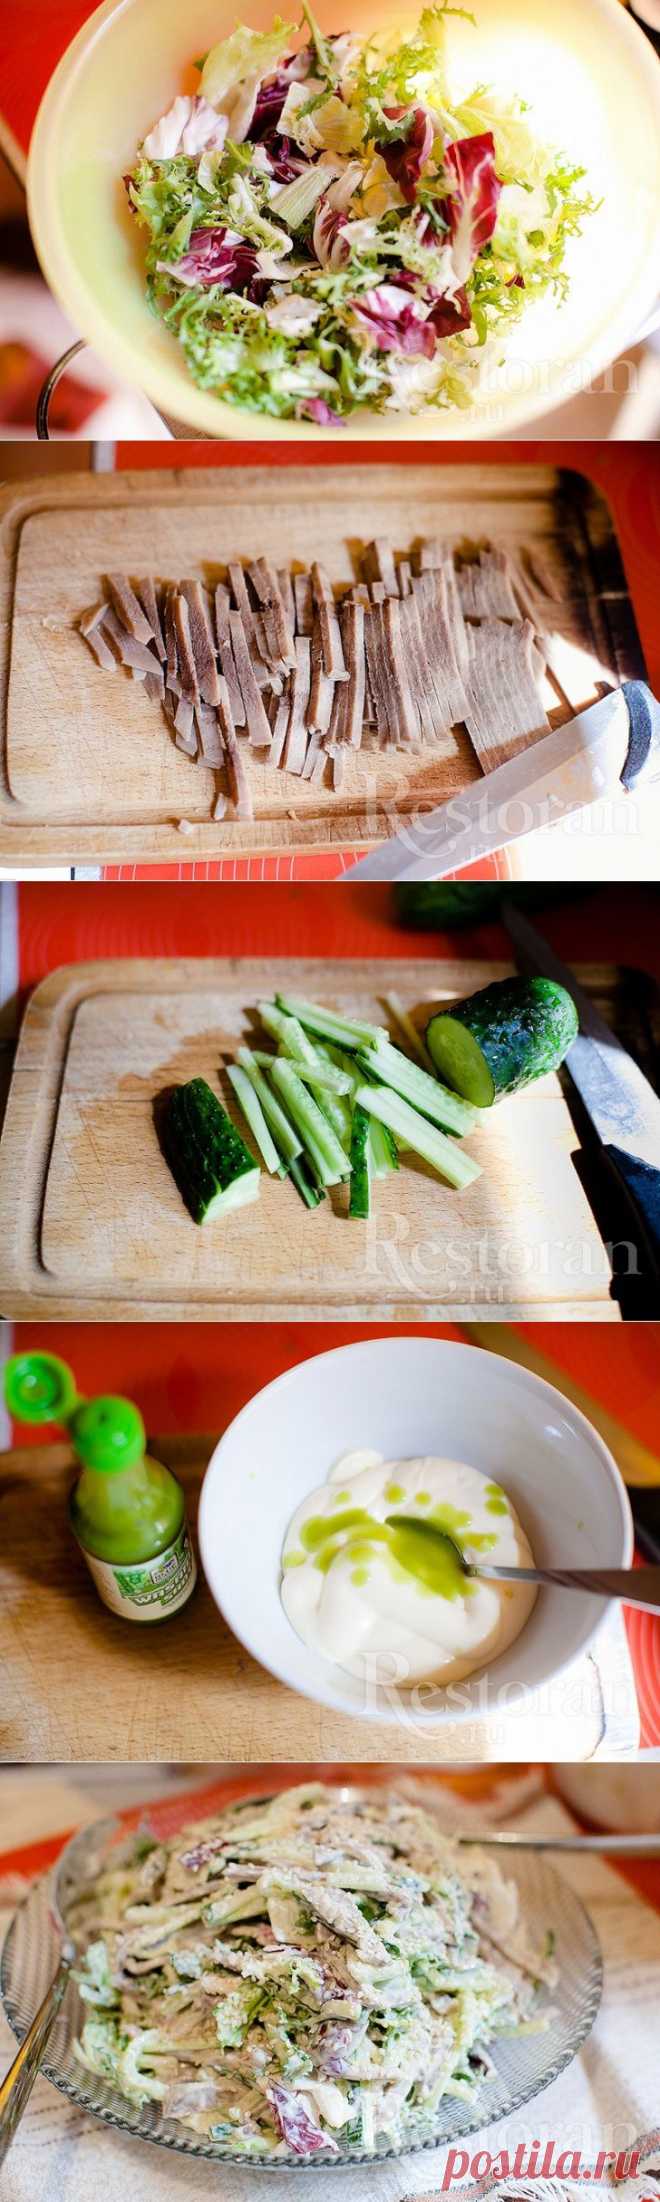 Рецепт японского салата с языком